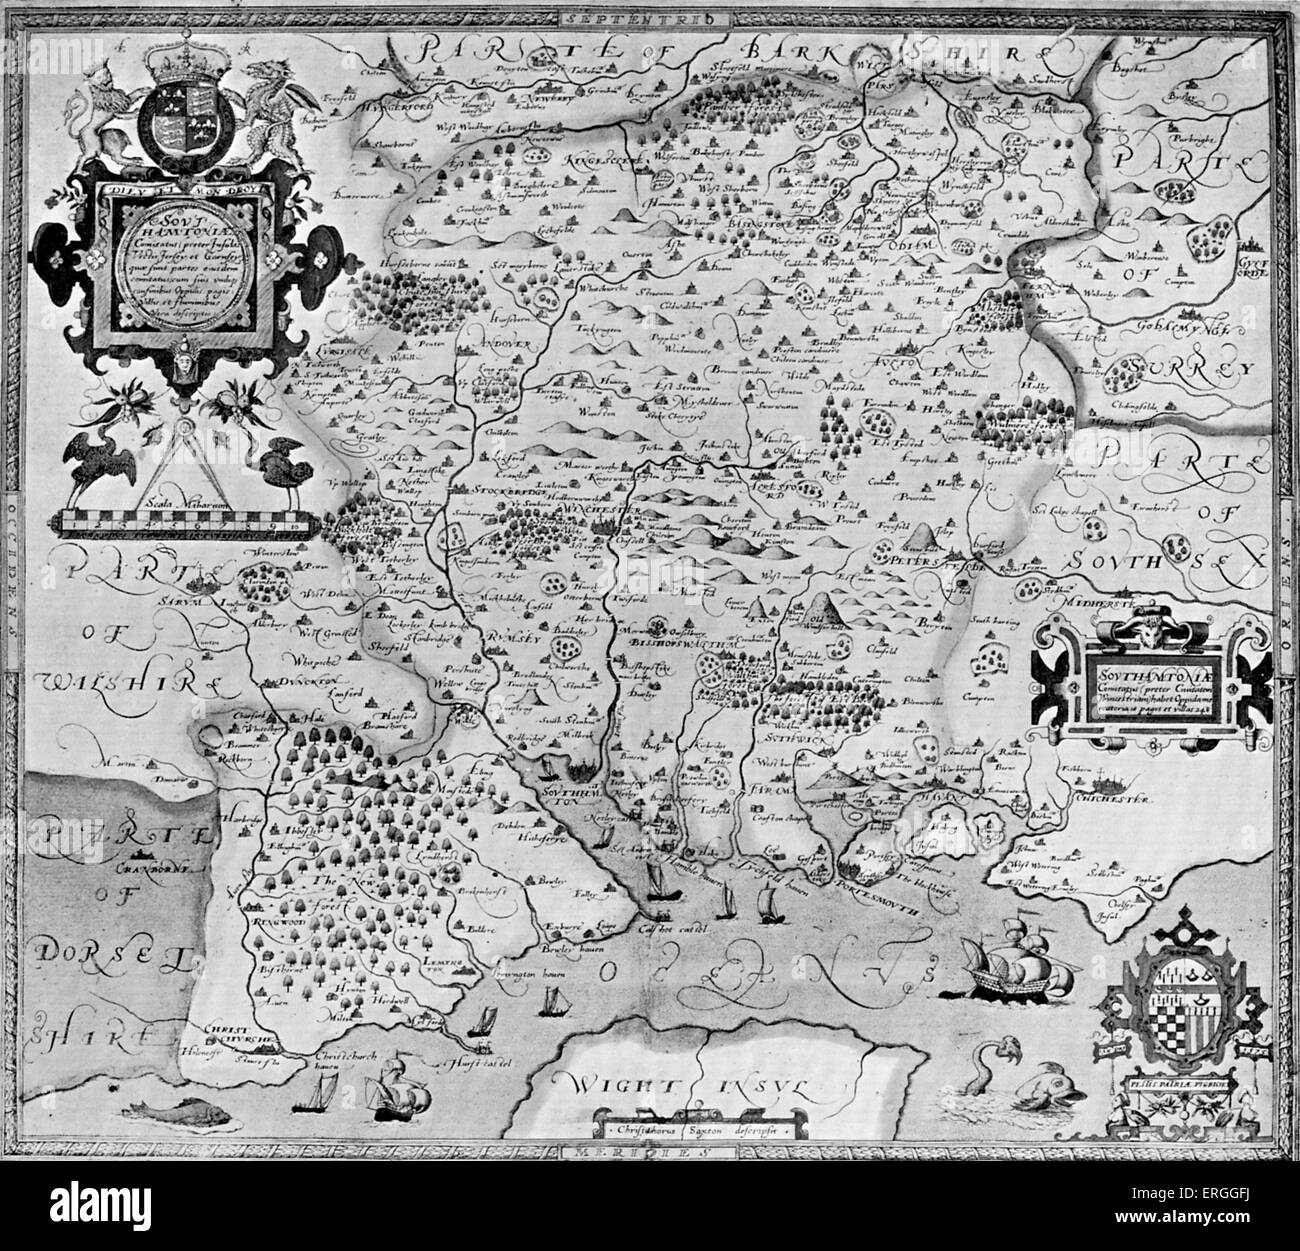 Karte von Grafschaft von Southampton, England in Christohper Saxtons 'Atlas der Grafschaften von England', 1574-9. (Auch mit dem Titel: "Karten der Grafschaften von England und Wales"). Stockfoto